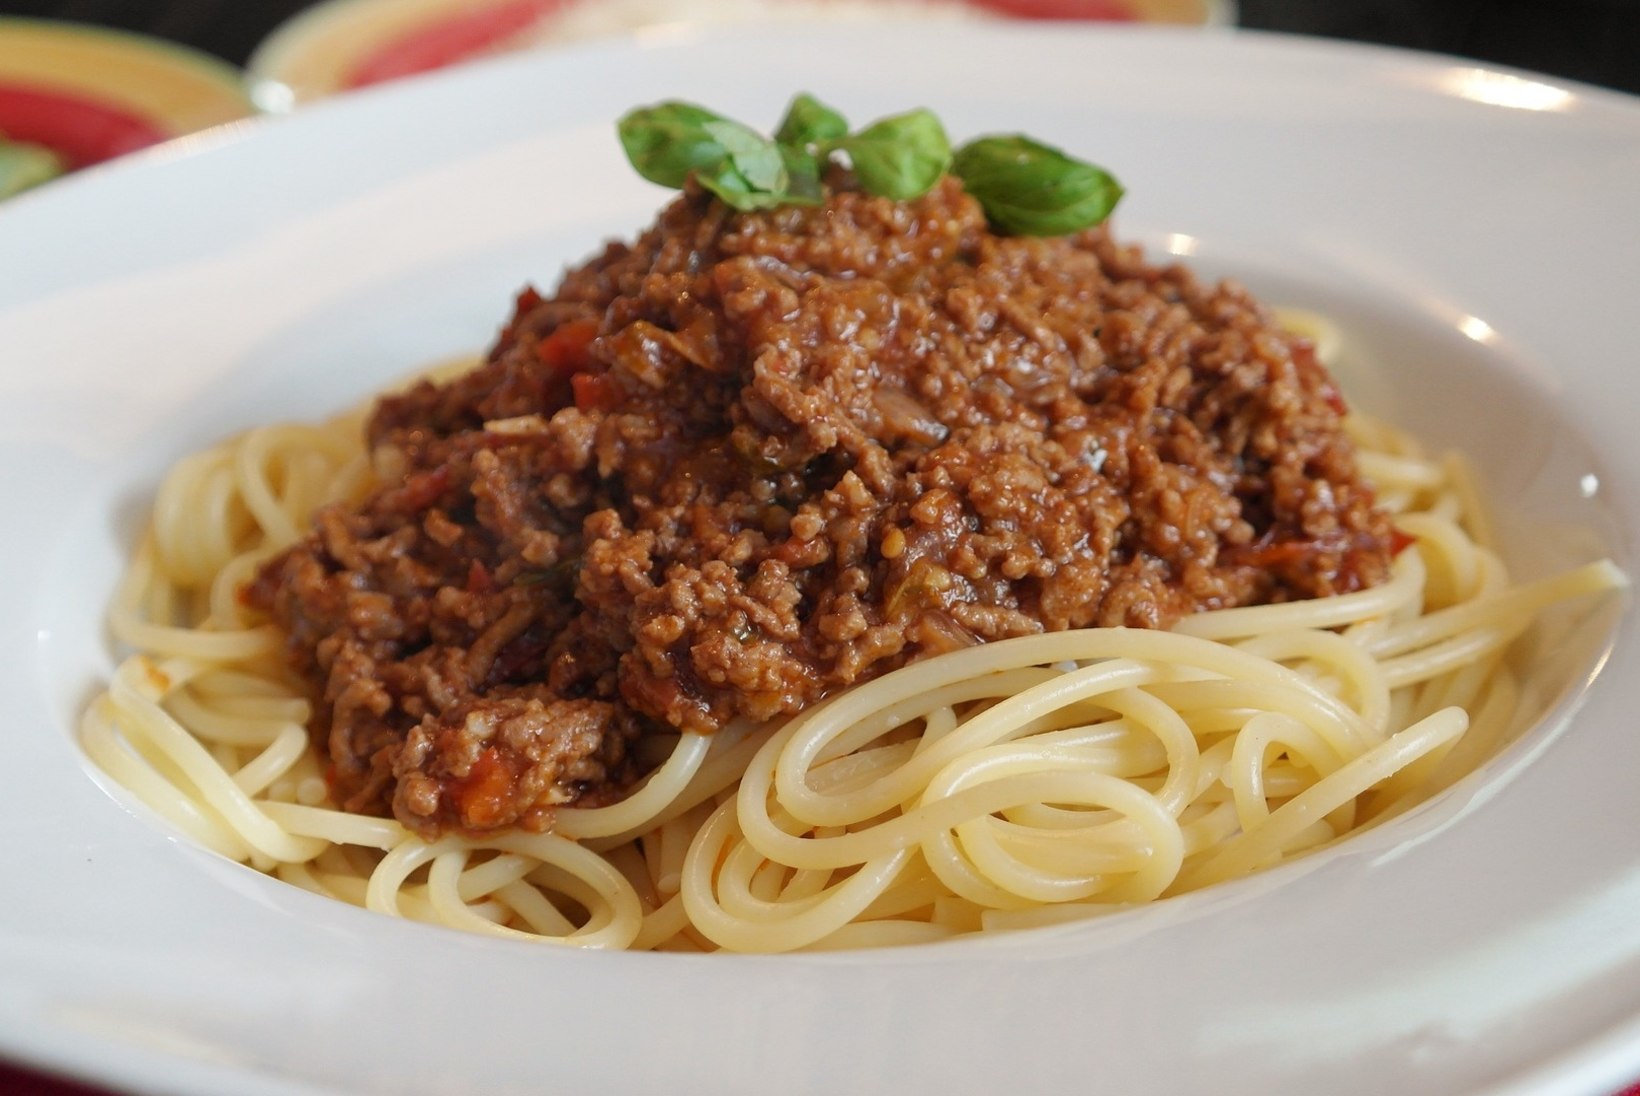 KOHALIKUD KOMBED | Käitu Itaalias nagu itaallane: spagette süües ära kasuta lusikat ja parmesan unusta sootuks 